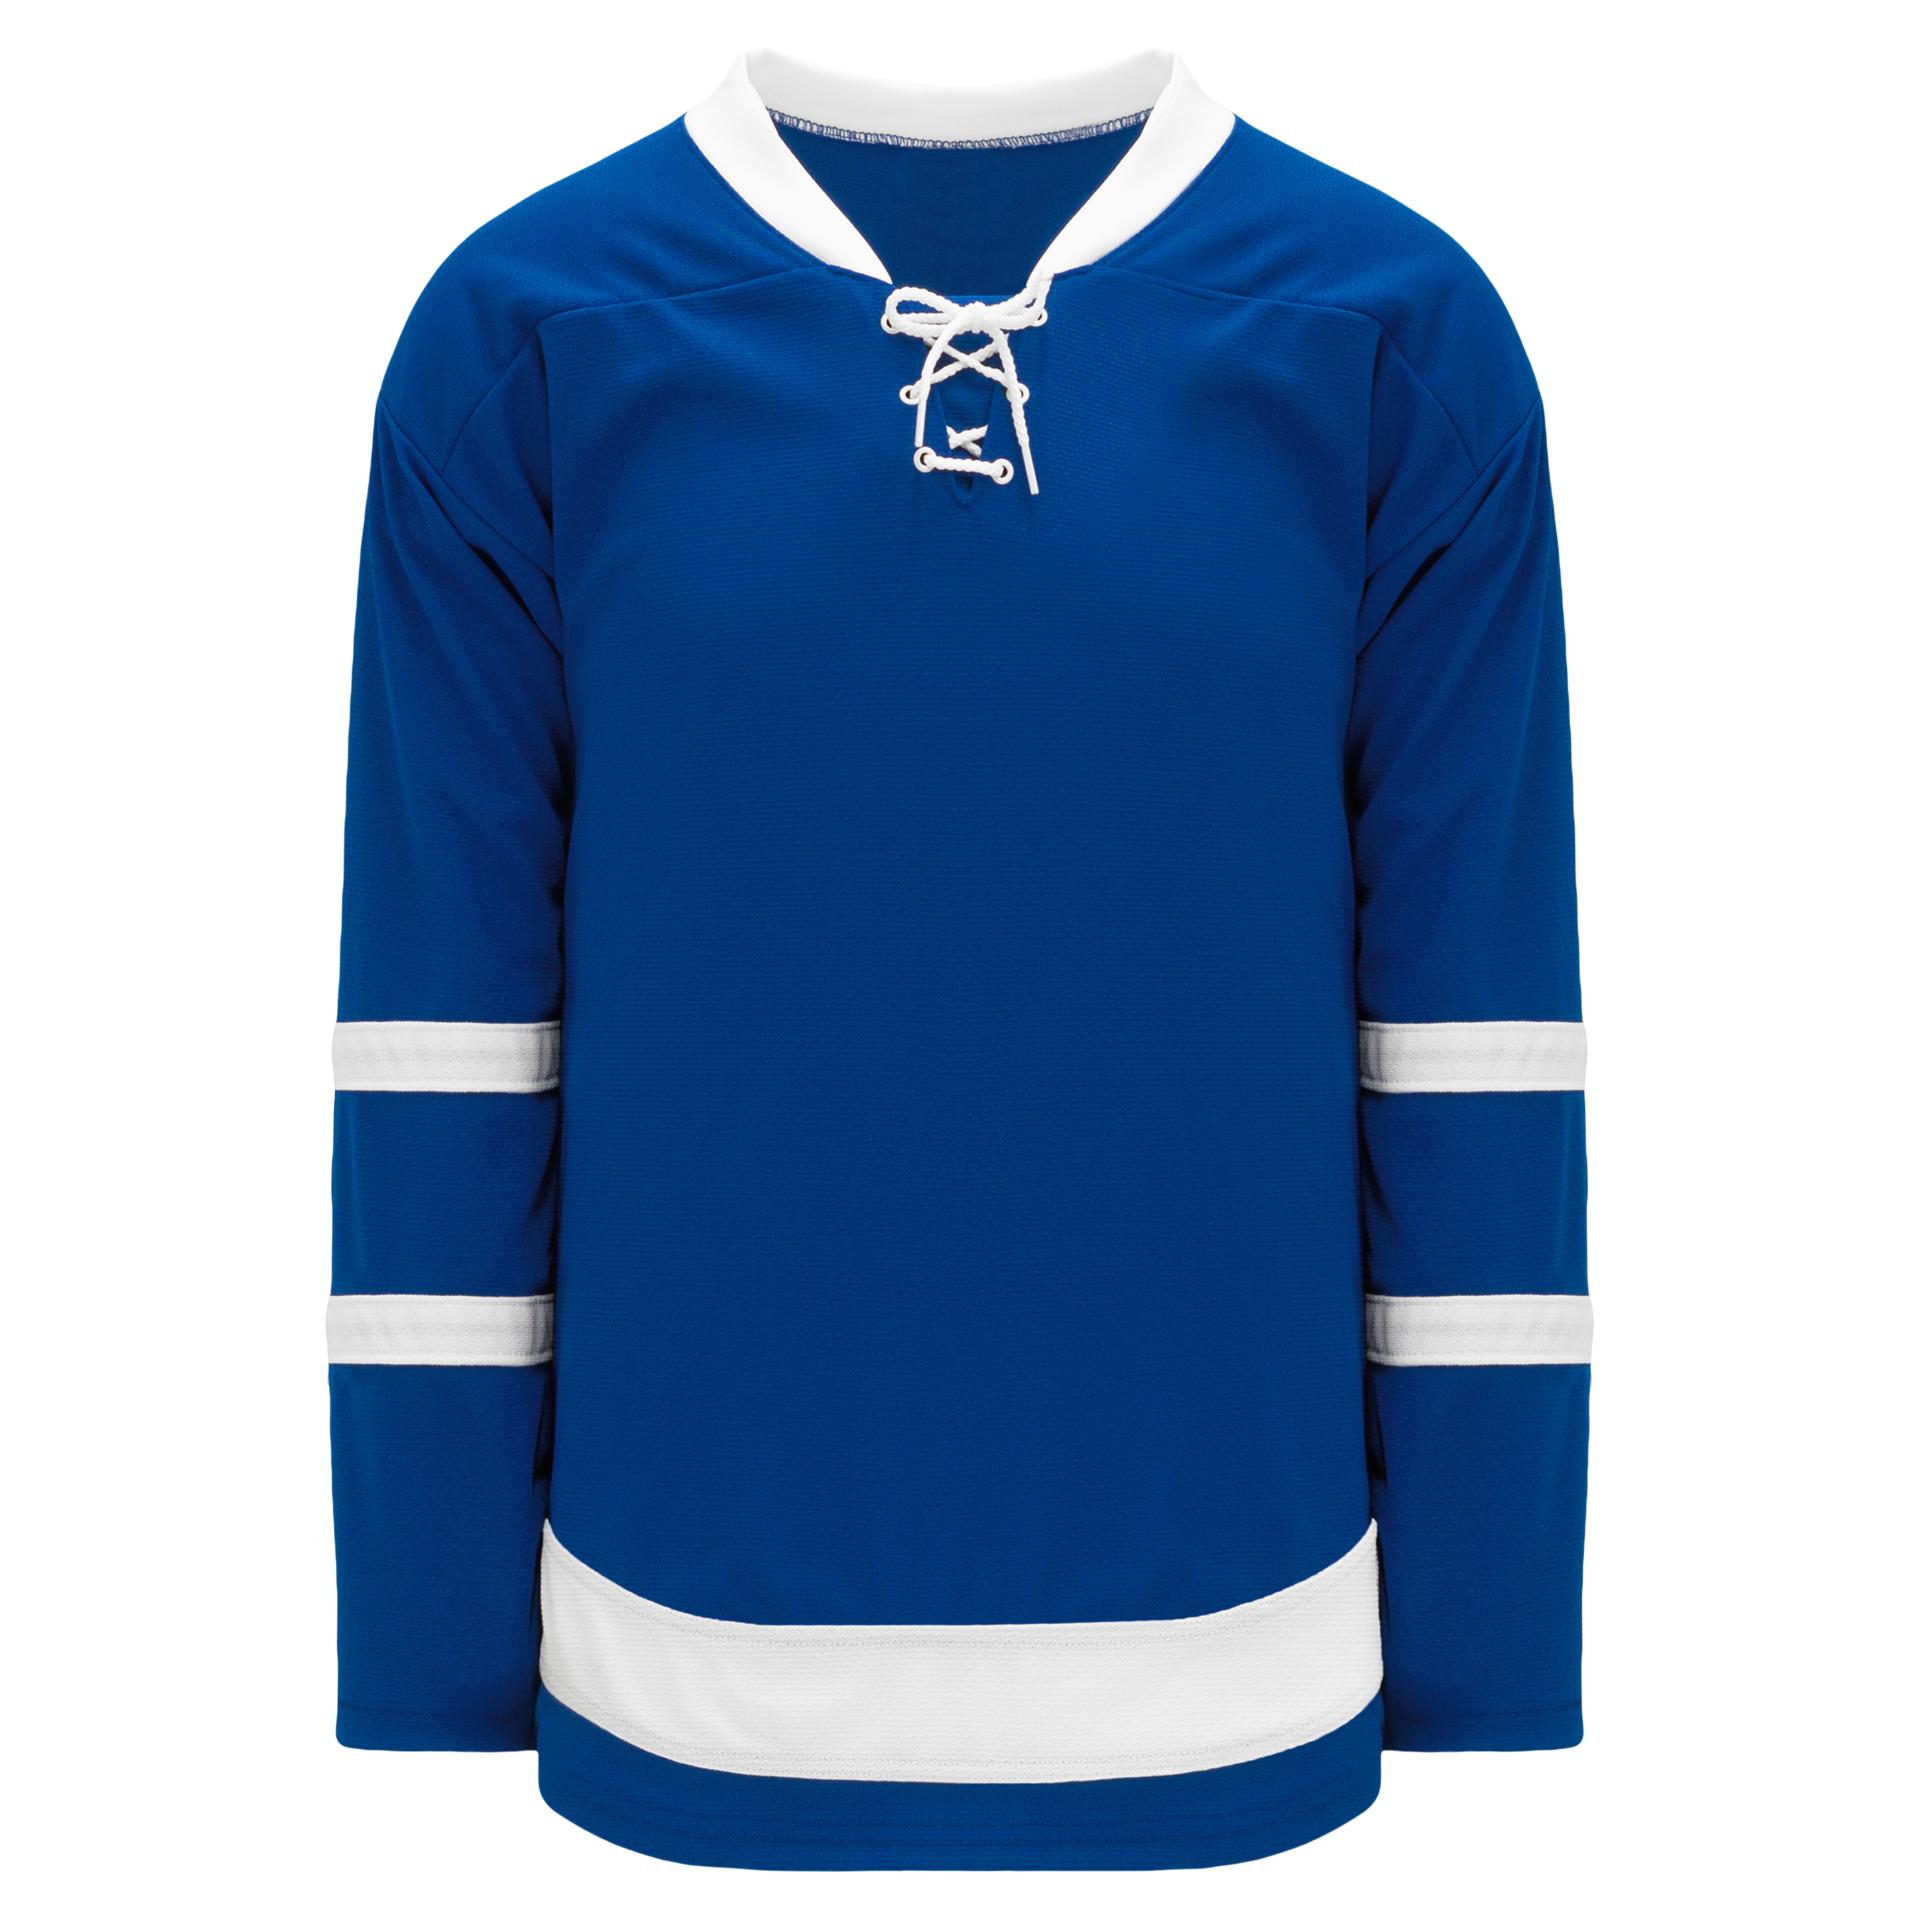 Toronto Maple Leafs Gear, Maple Leafs Jerseys, Toronto Maple